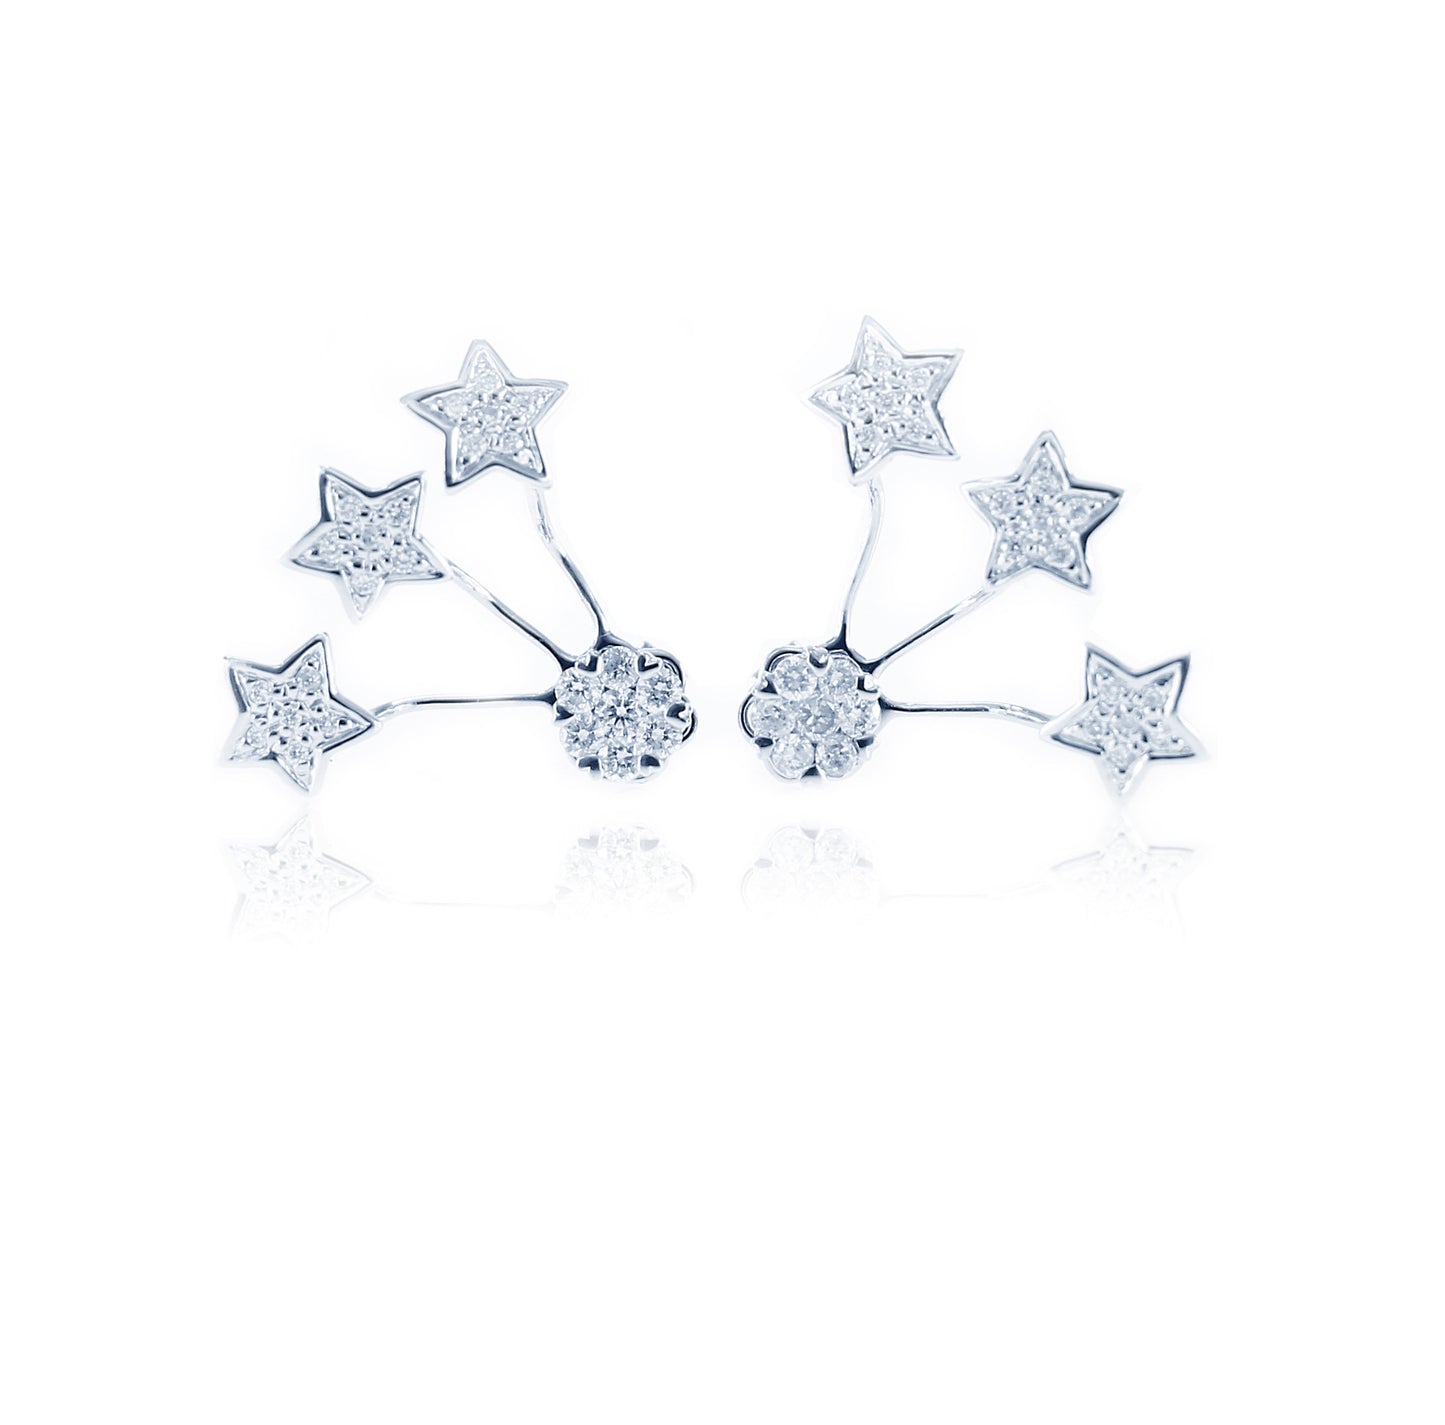 Shooting Stars Diamond Earrings in 18K White Gold